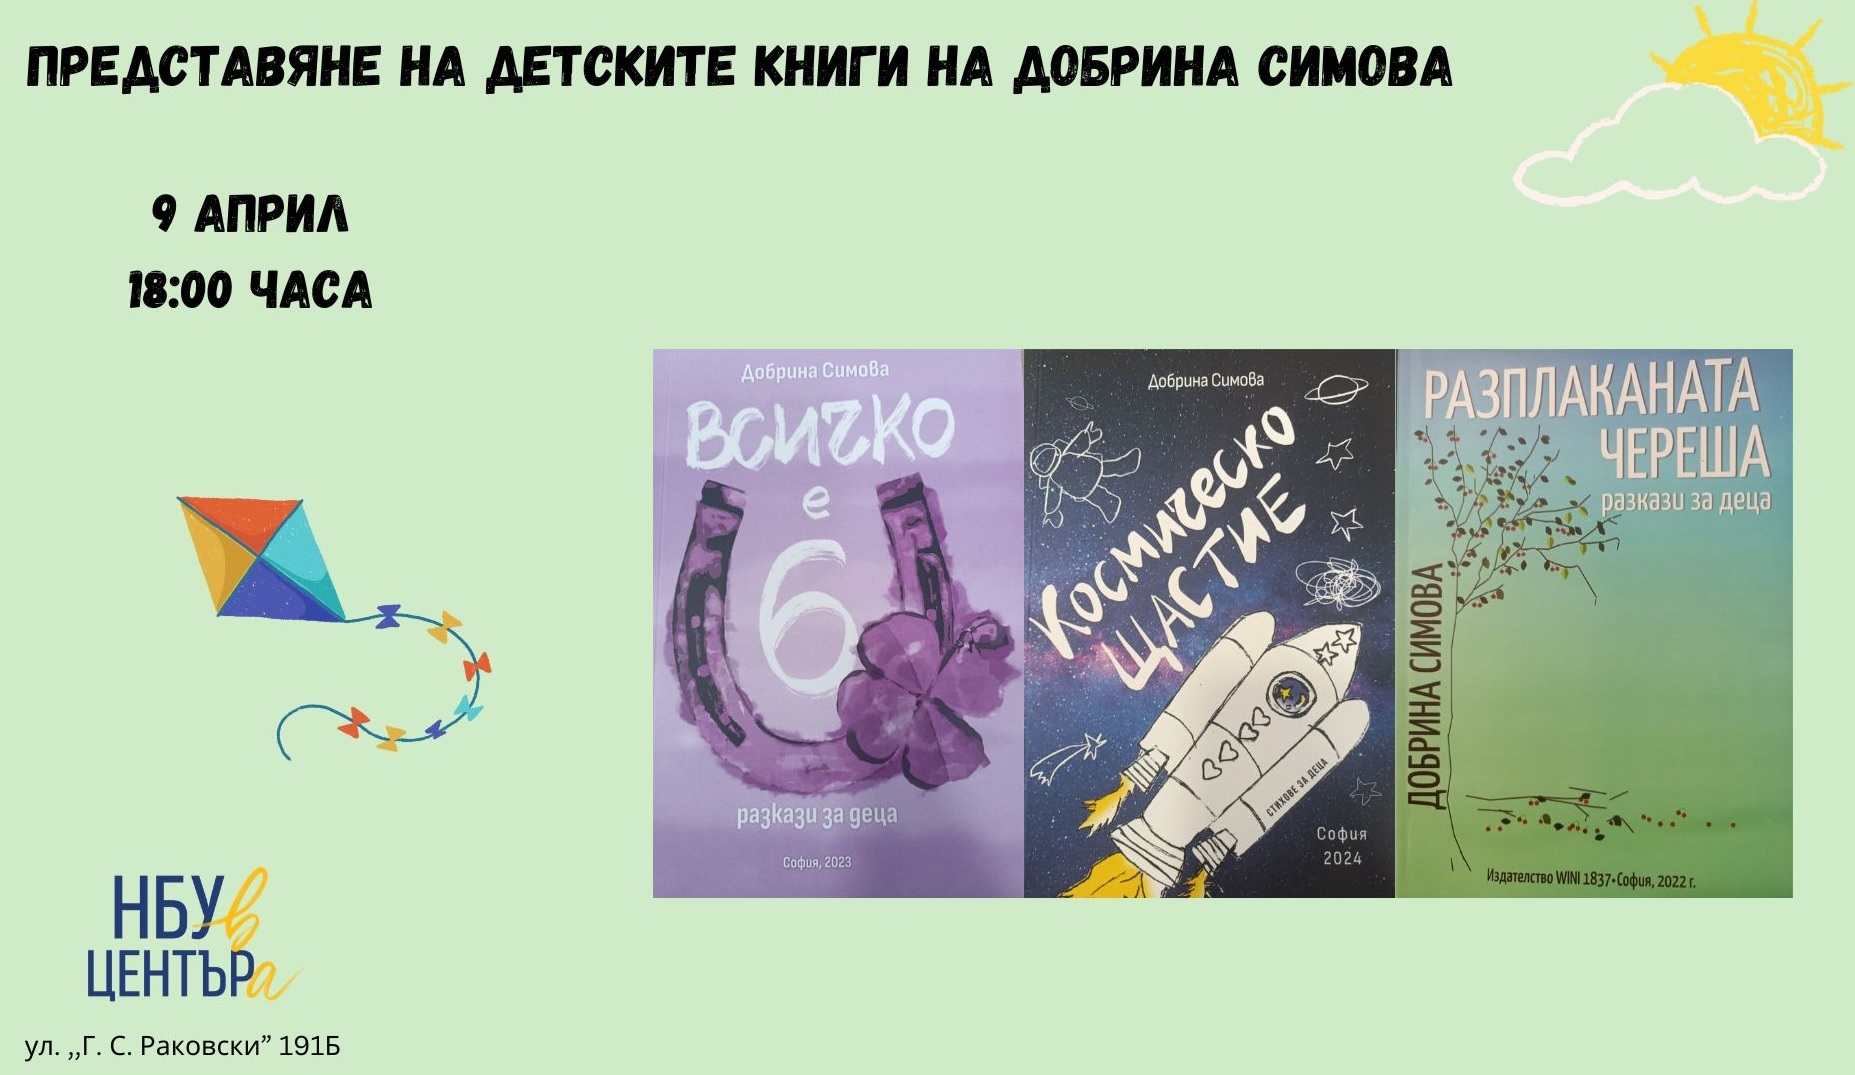 Представяне на детските книги на Добрина Симова